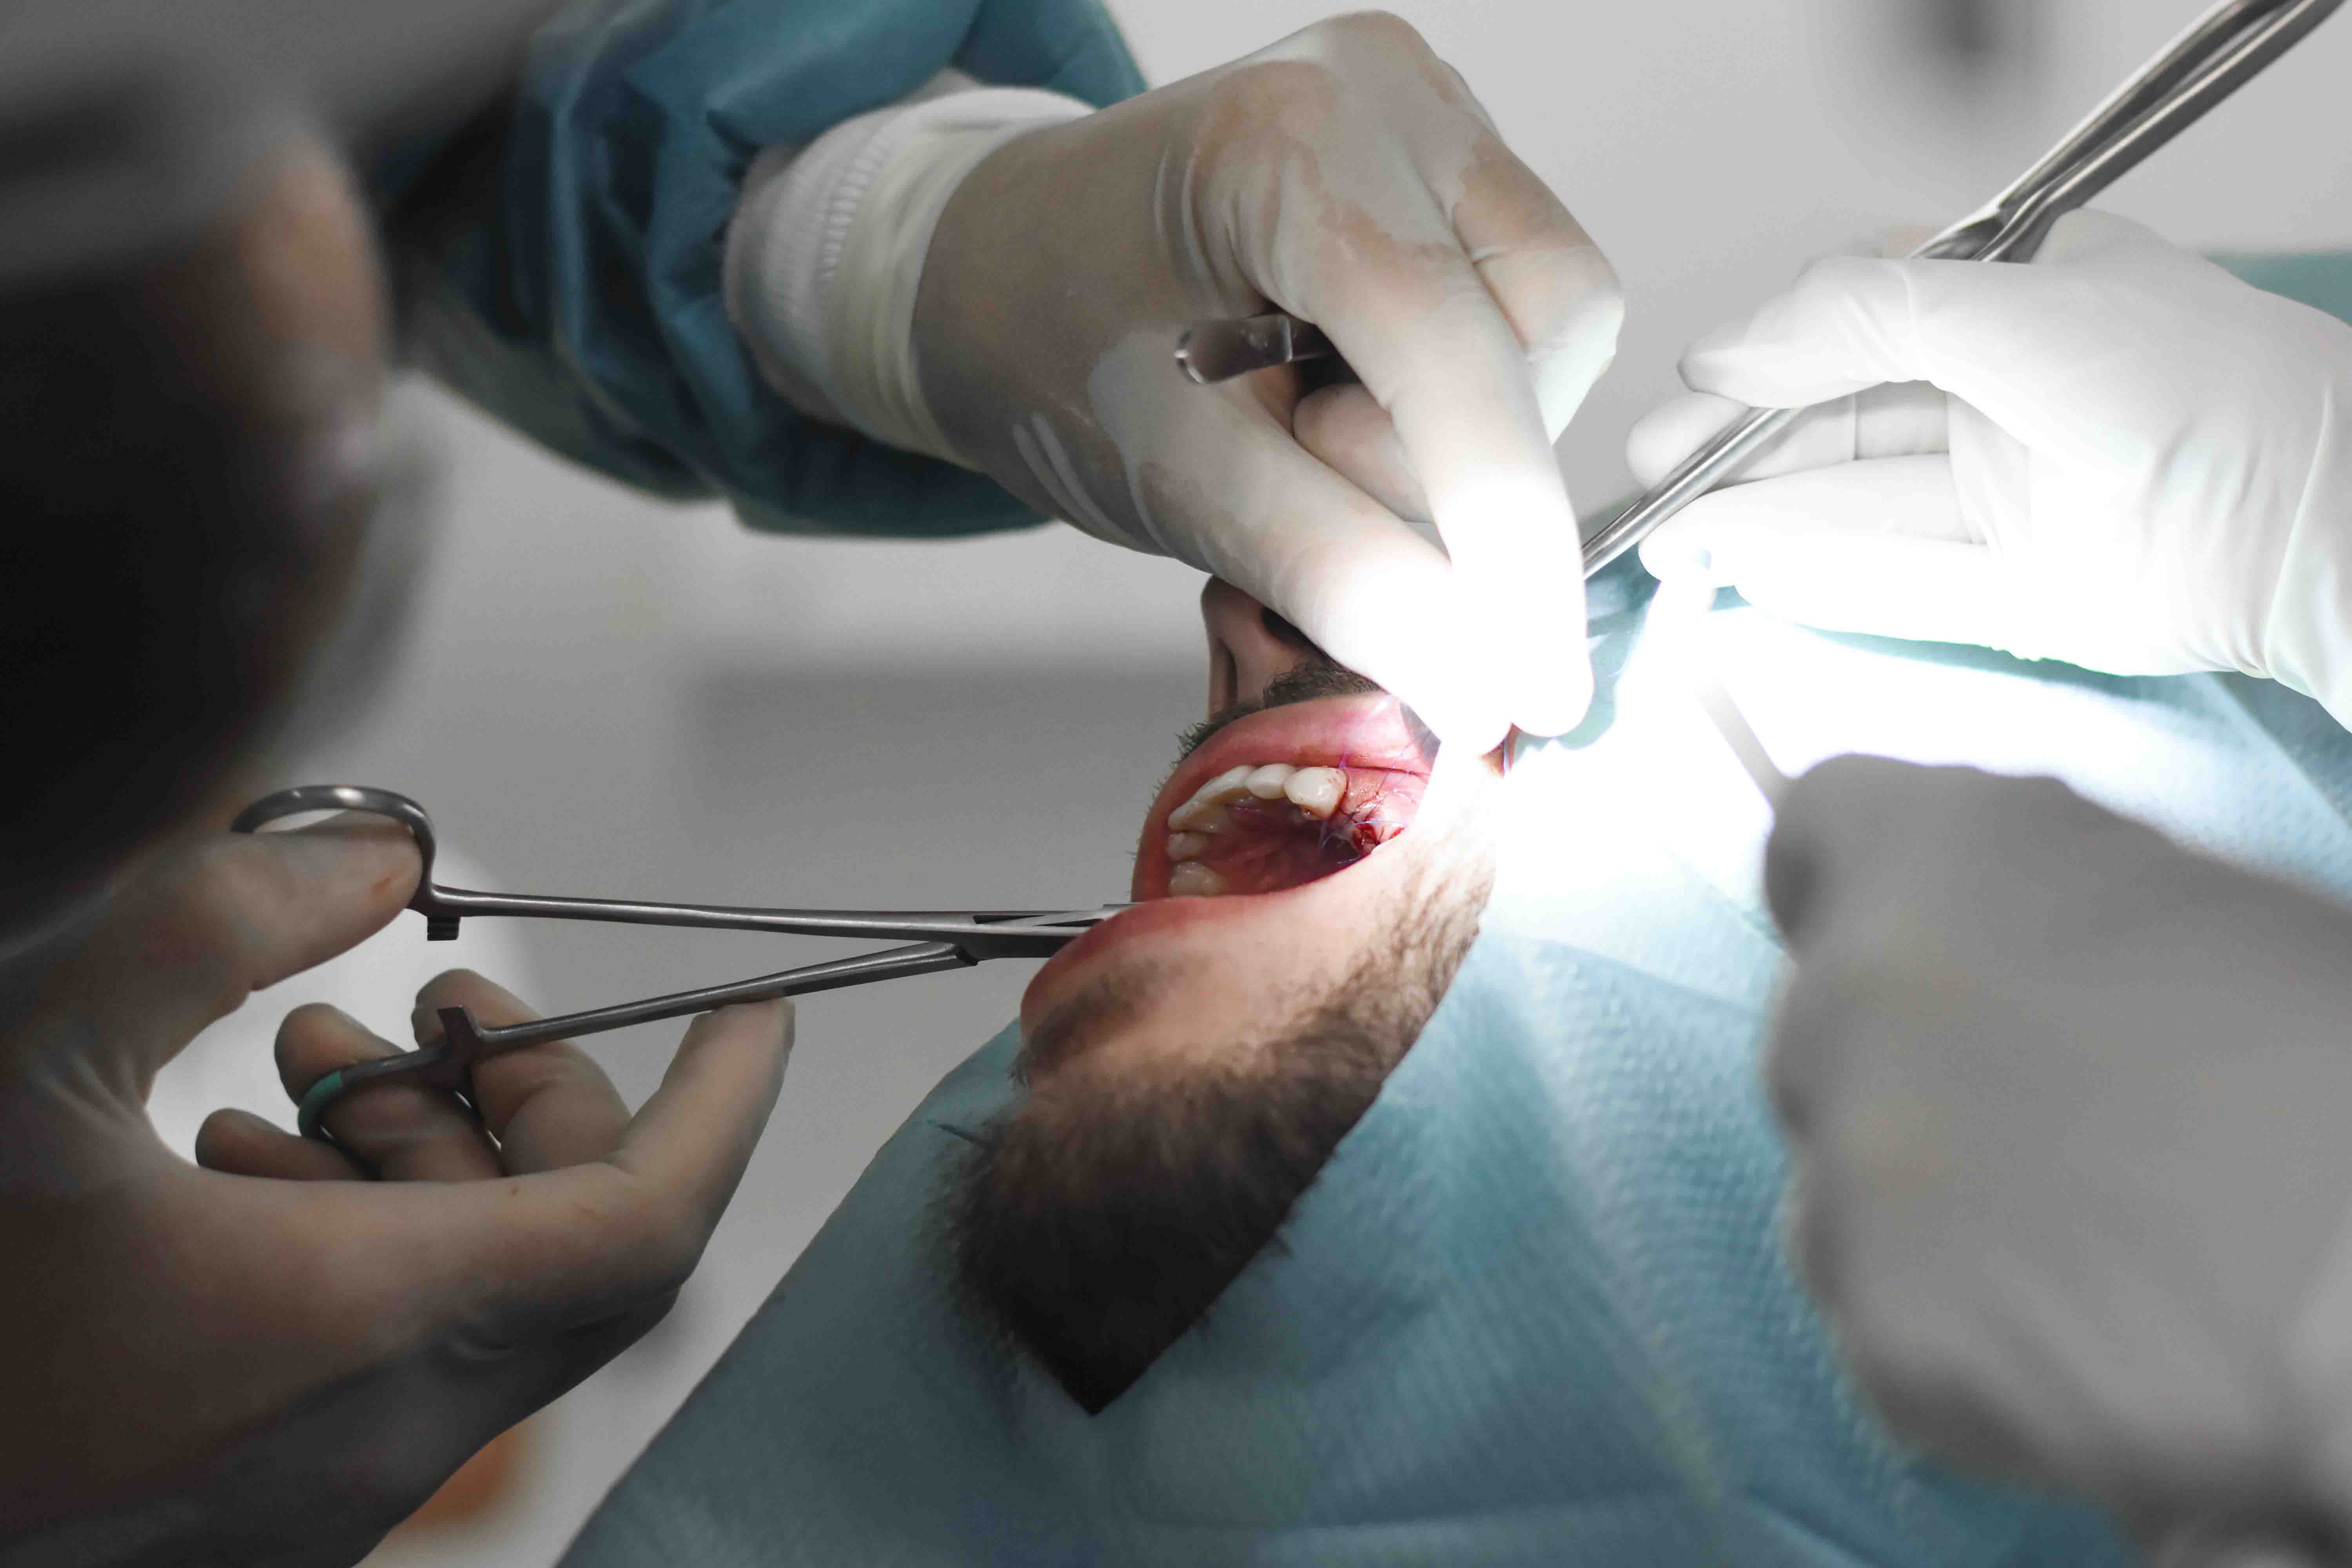 autotransplantation-teeth